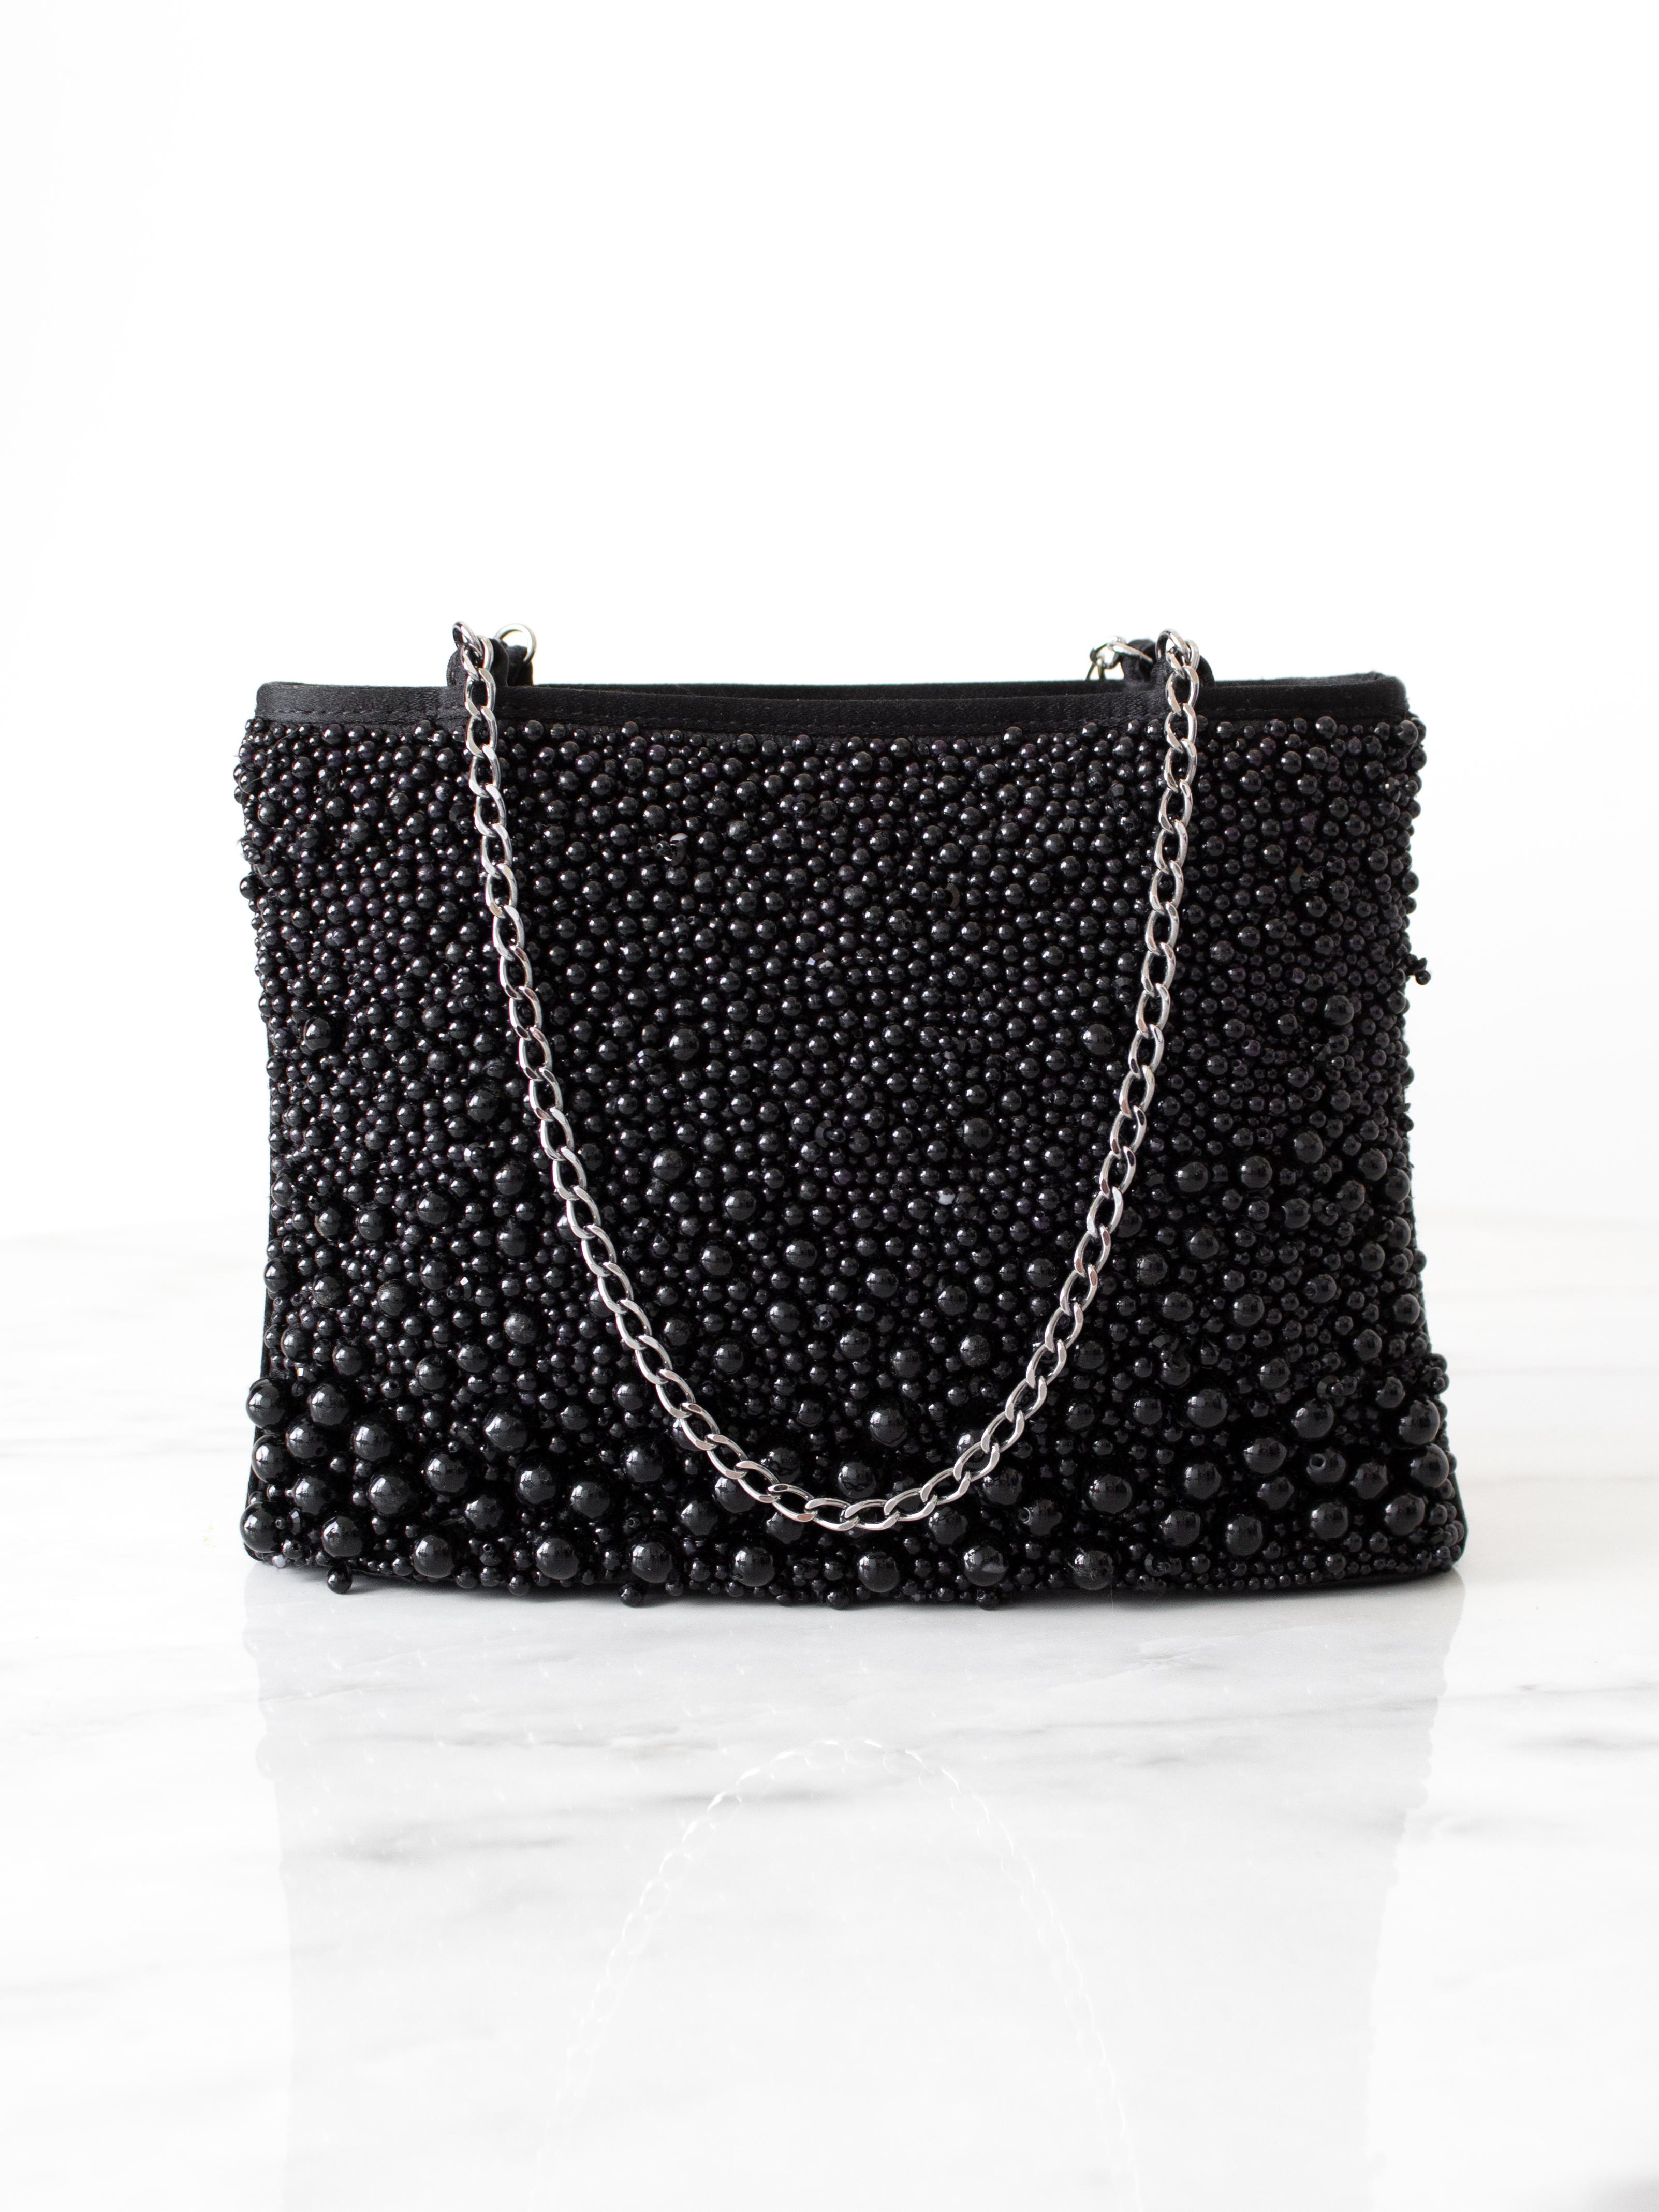 Die schicke Abendtasche aus der Act I-Kollektion Frühjahr-Sommer 2001 von Chanel. Die aus luxuriöser Seide gefertigte Tasche ist mit Ruthenium-Kettenbändern verziert und trägt das ikonische CC-Logo sowie zarte Perlenimitate, die an schwarzen Kaviar